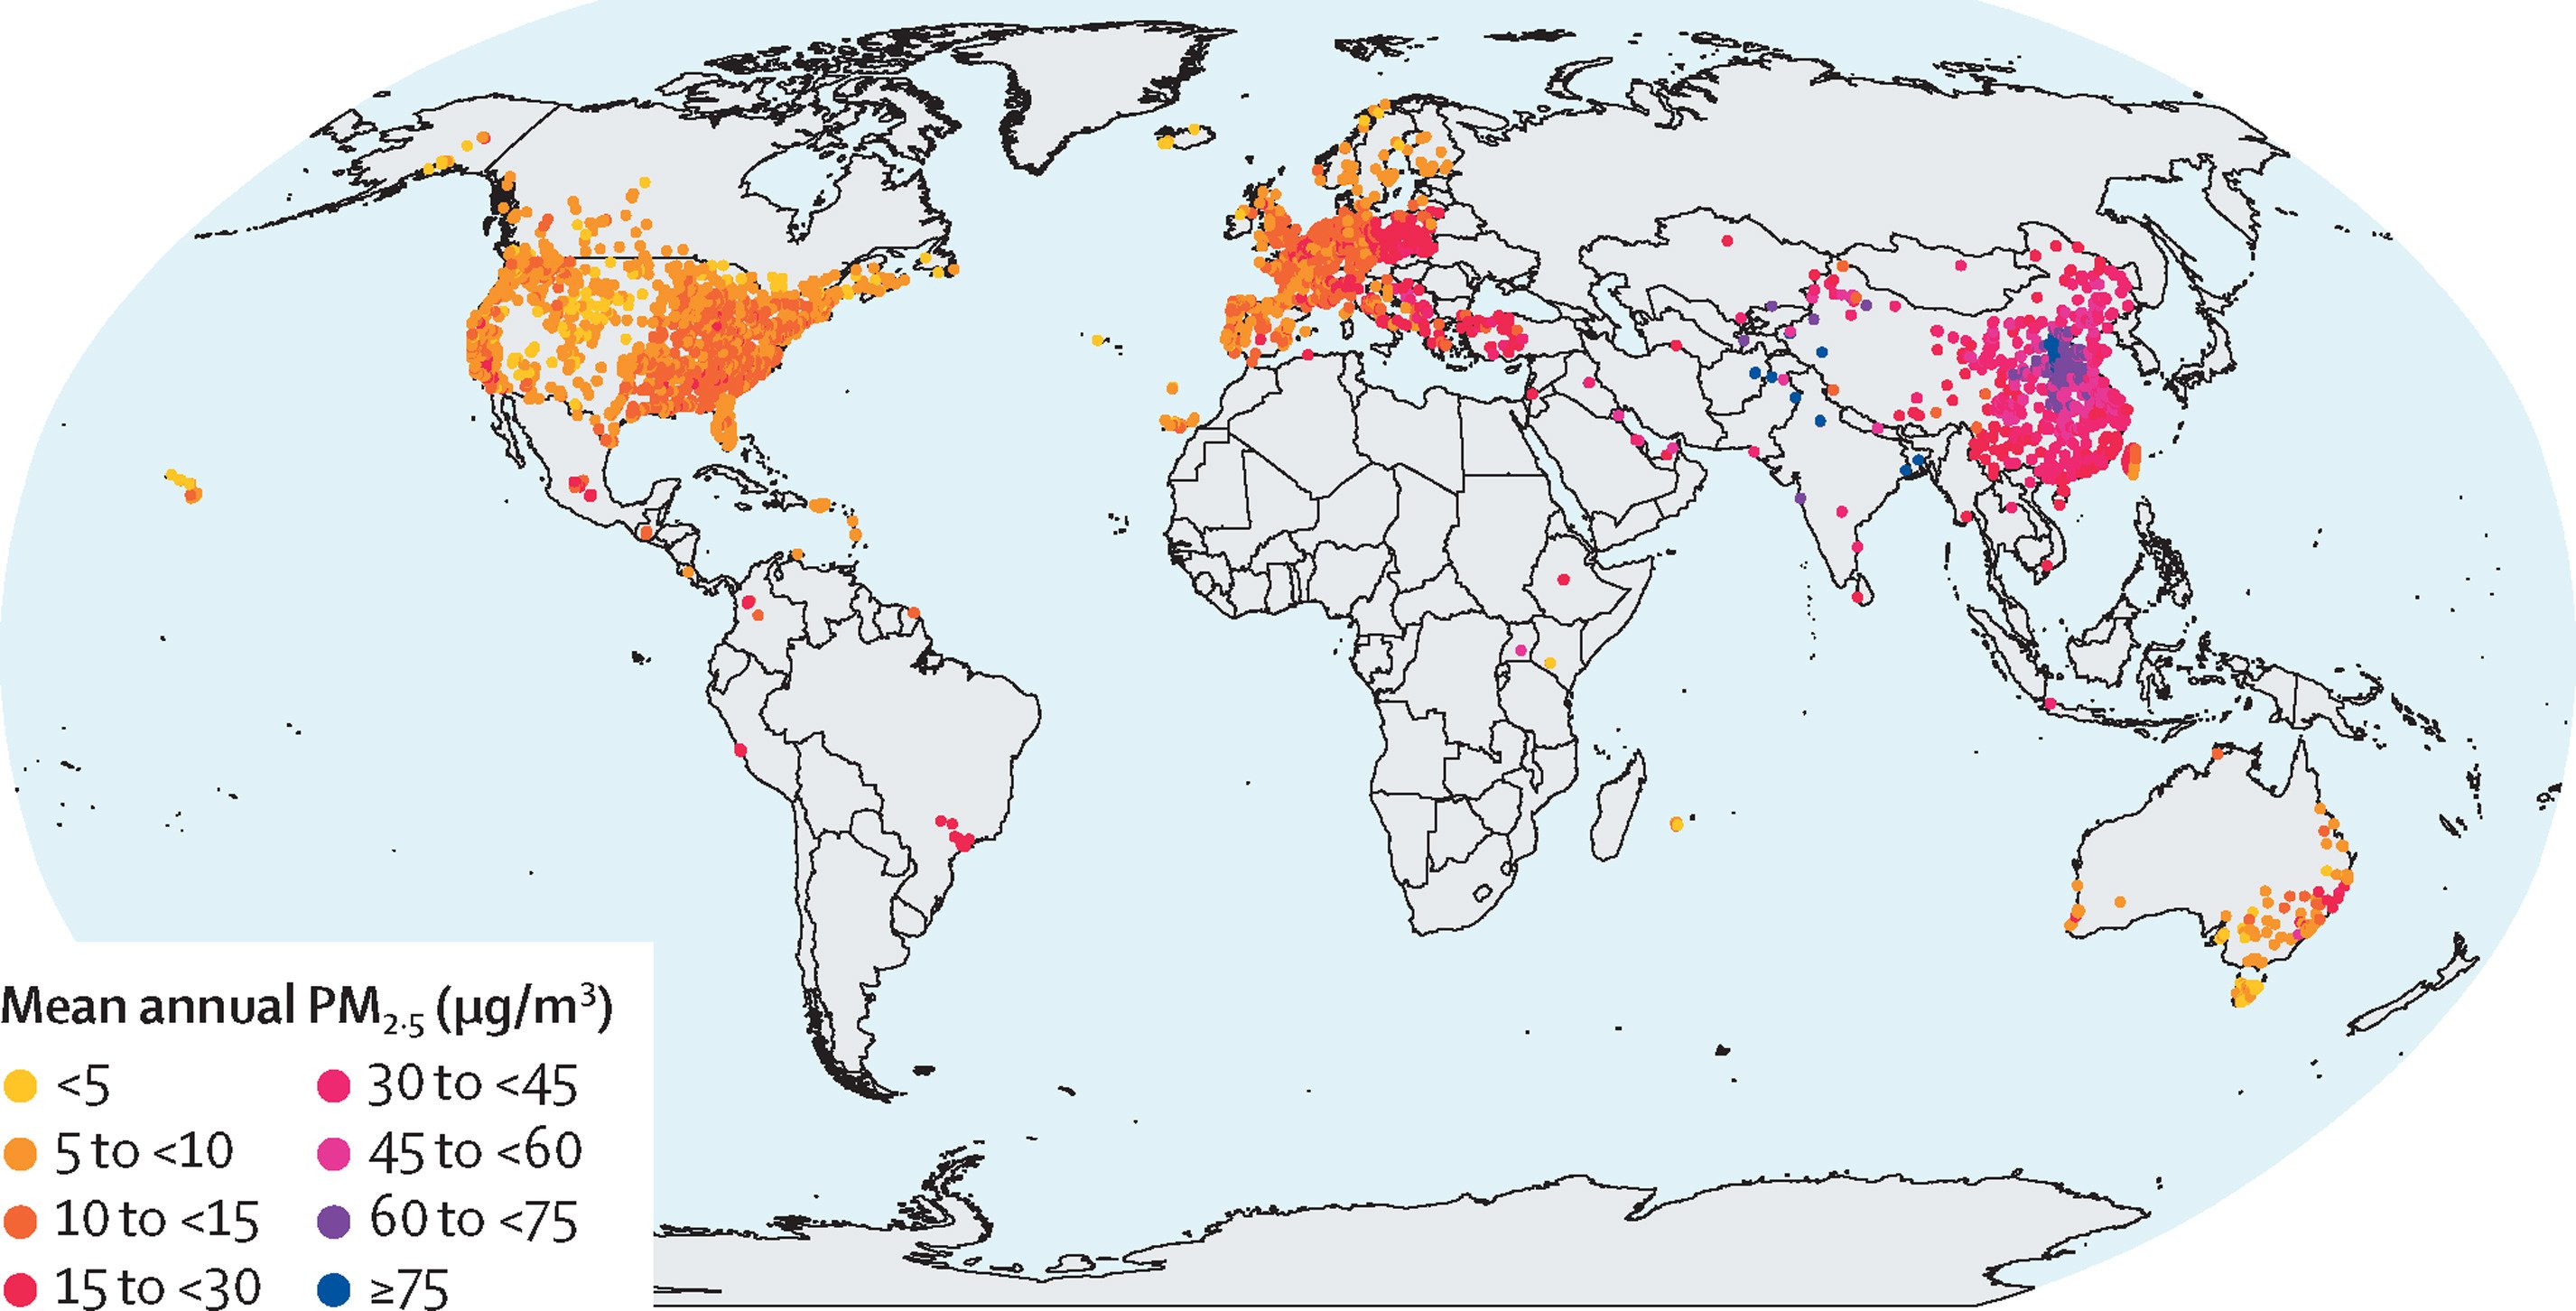 Estações de monitoramento e concentração média anual de PM2,5 de 2000 a 2019.